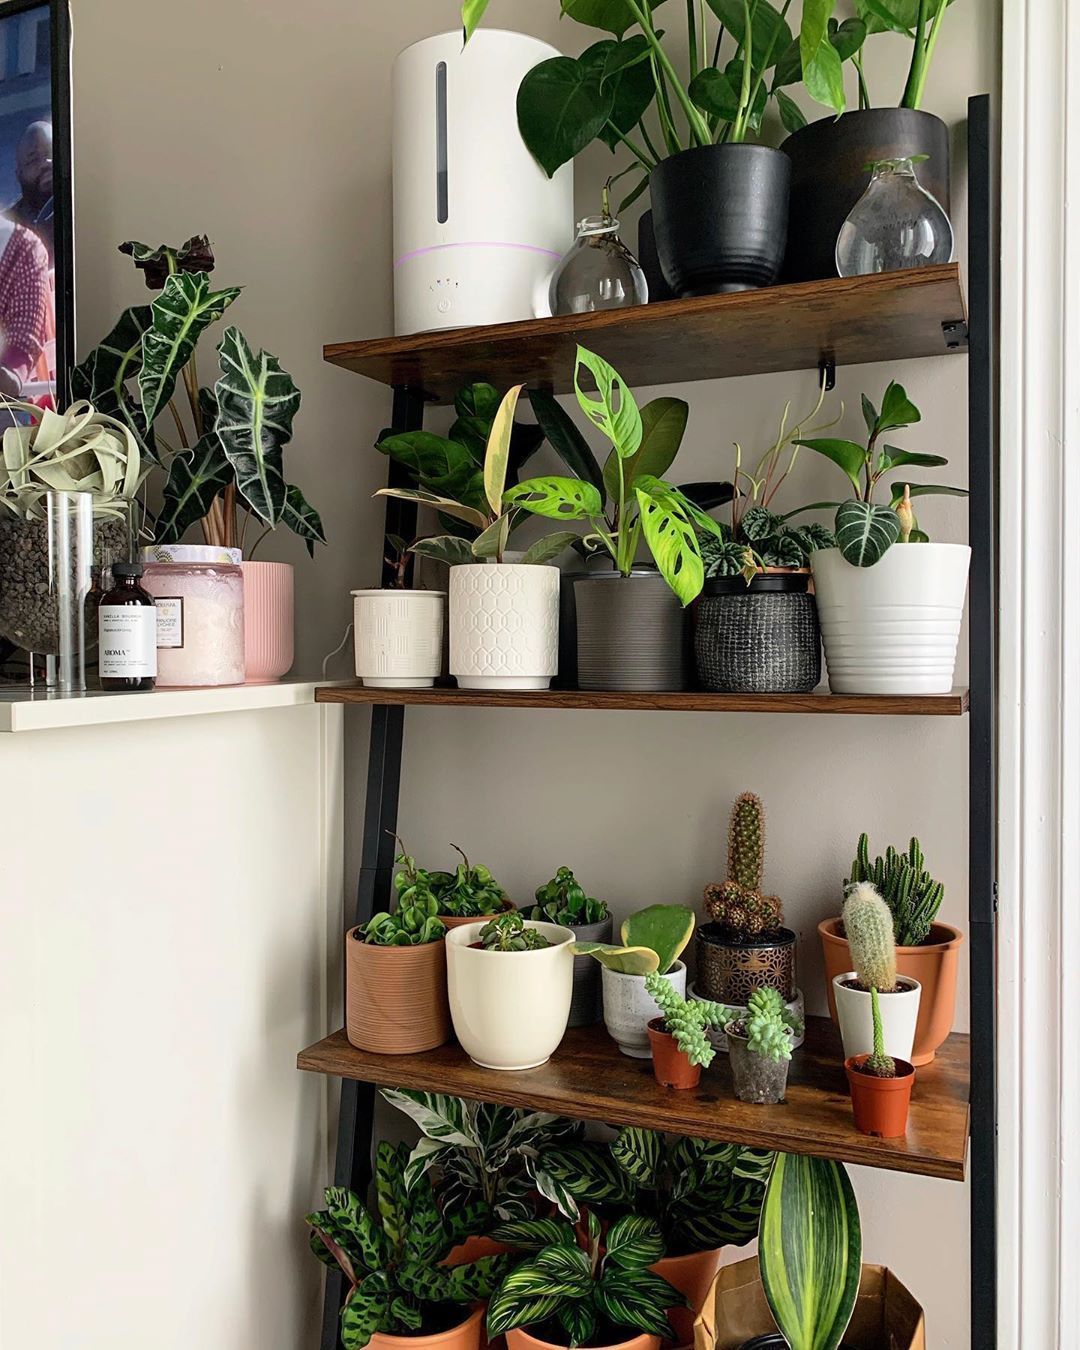 Plant Shelfie Vertical garden idea -   19 plants Indoor shelves ideas